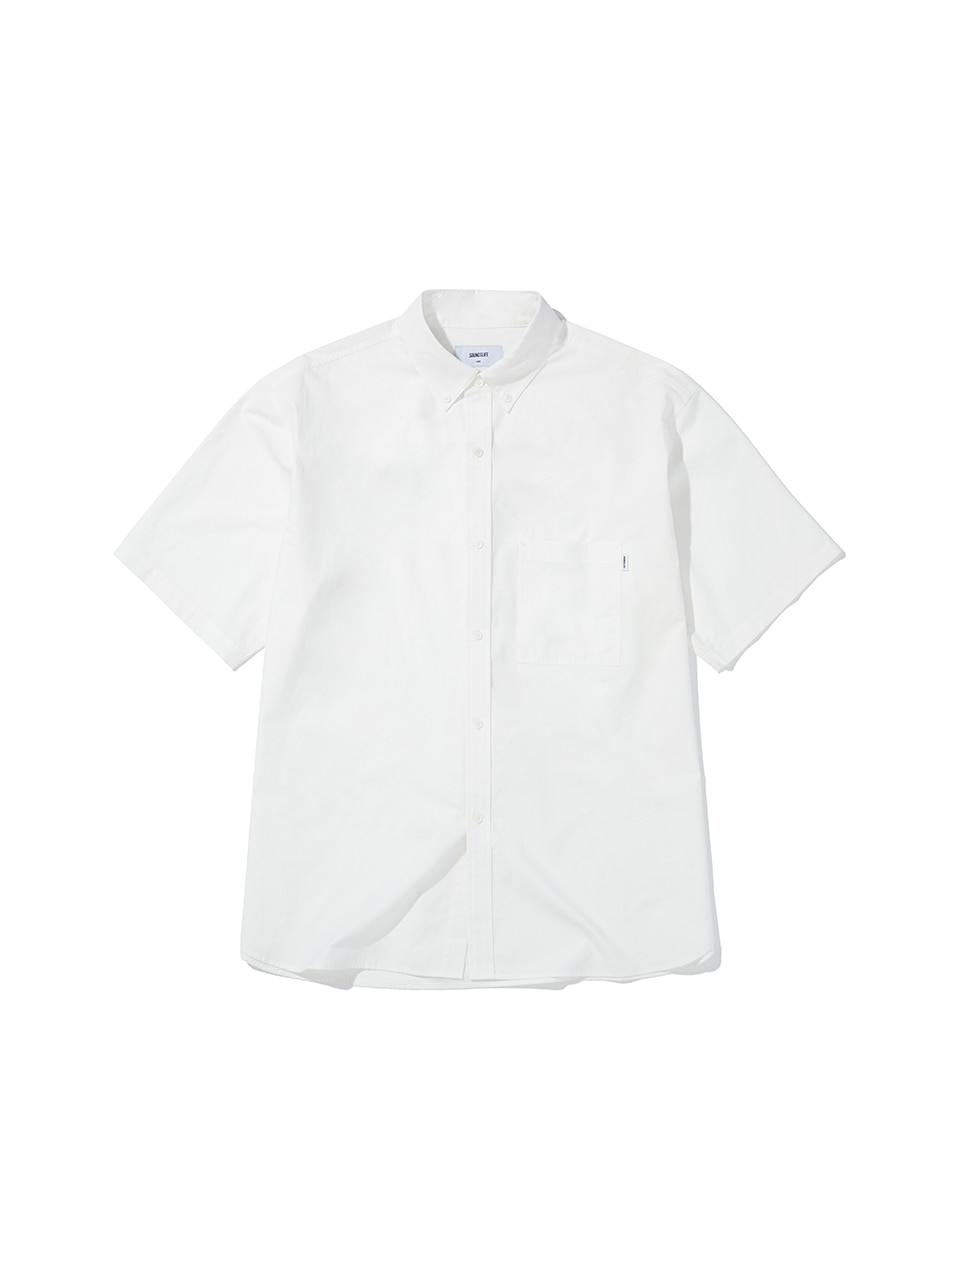 SOUNDSLIFE - Big Fit Short Sleeve Shirt White